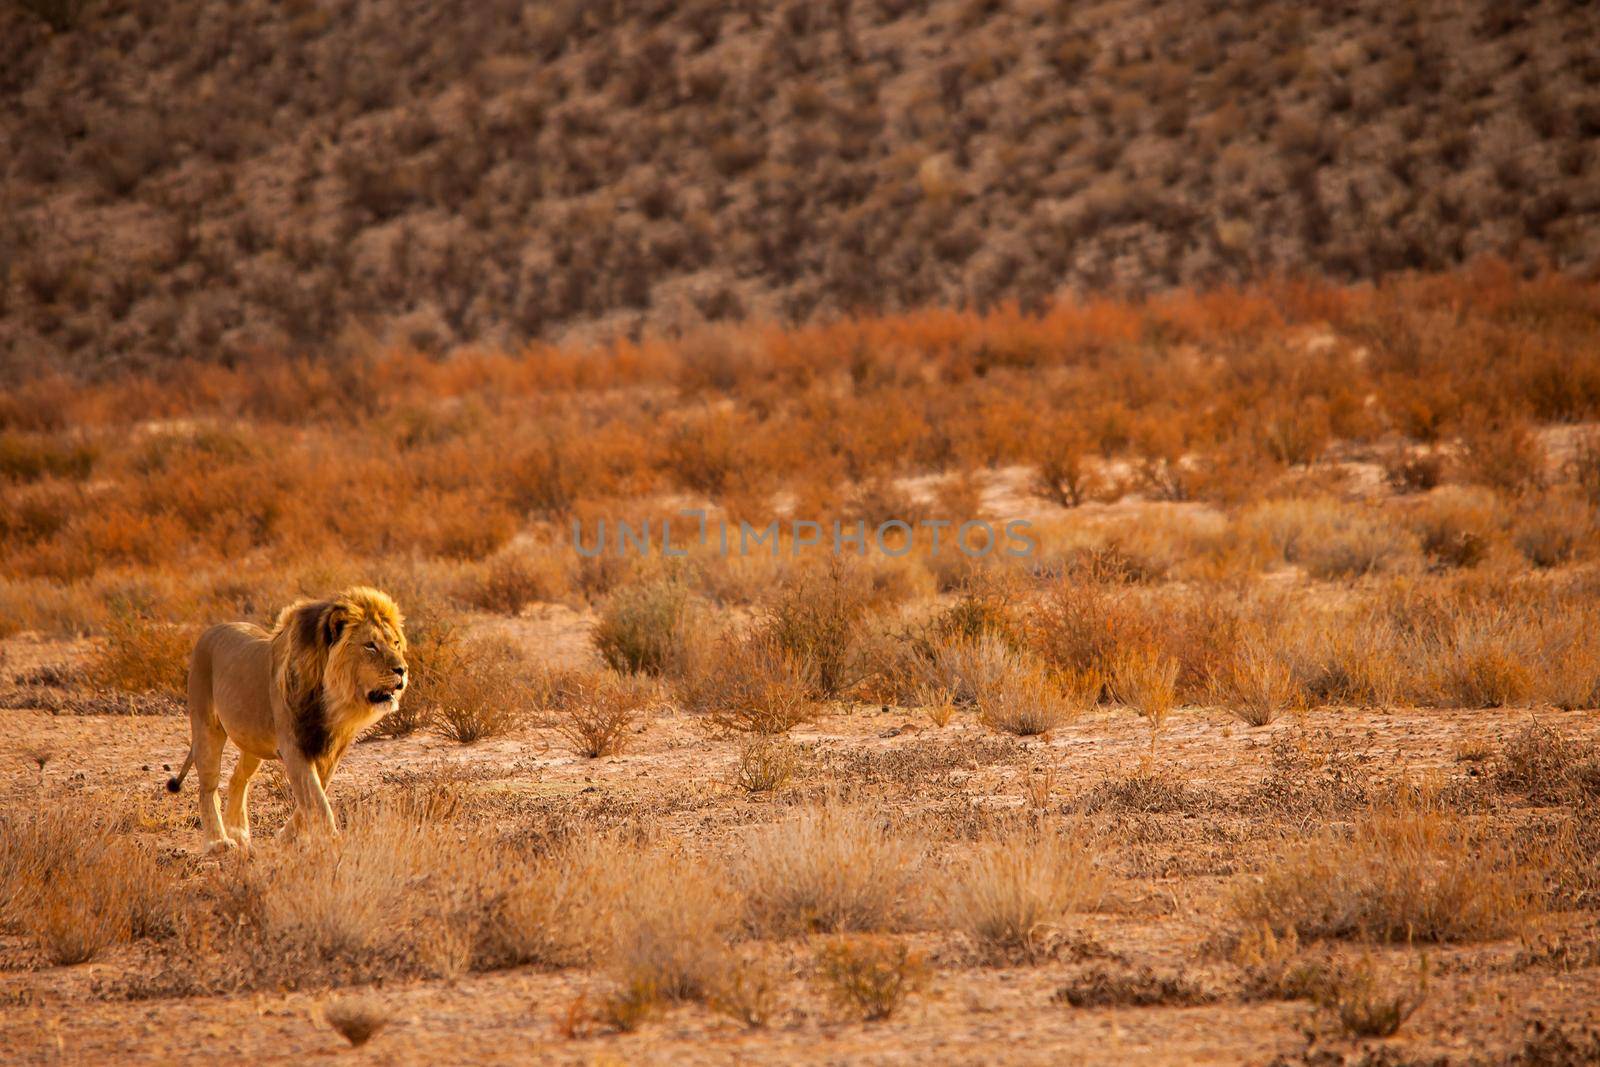 Kalahari Lion (Panthera leo) 5119 by kobus_peche